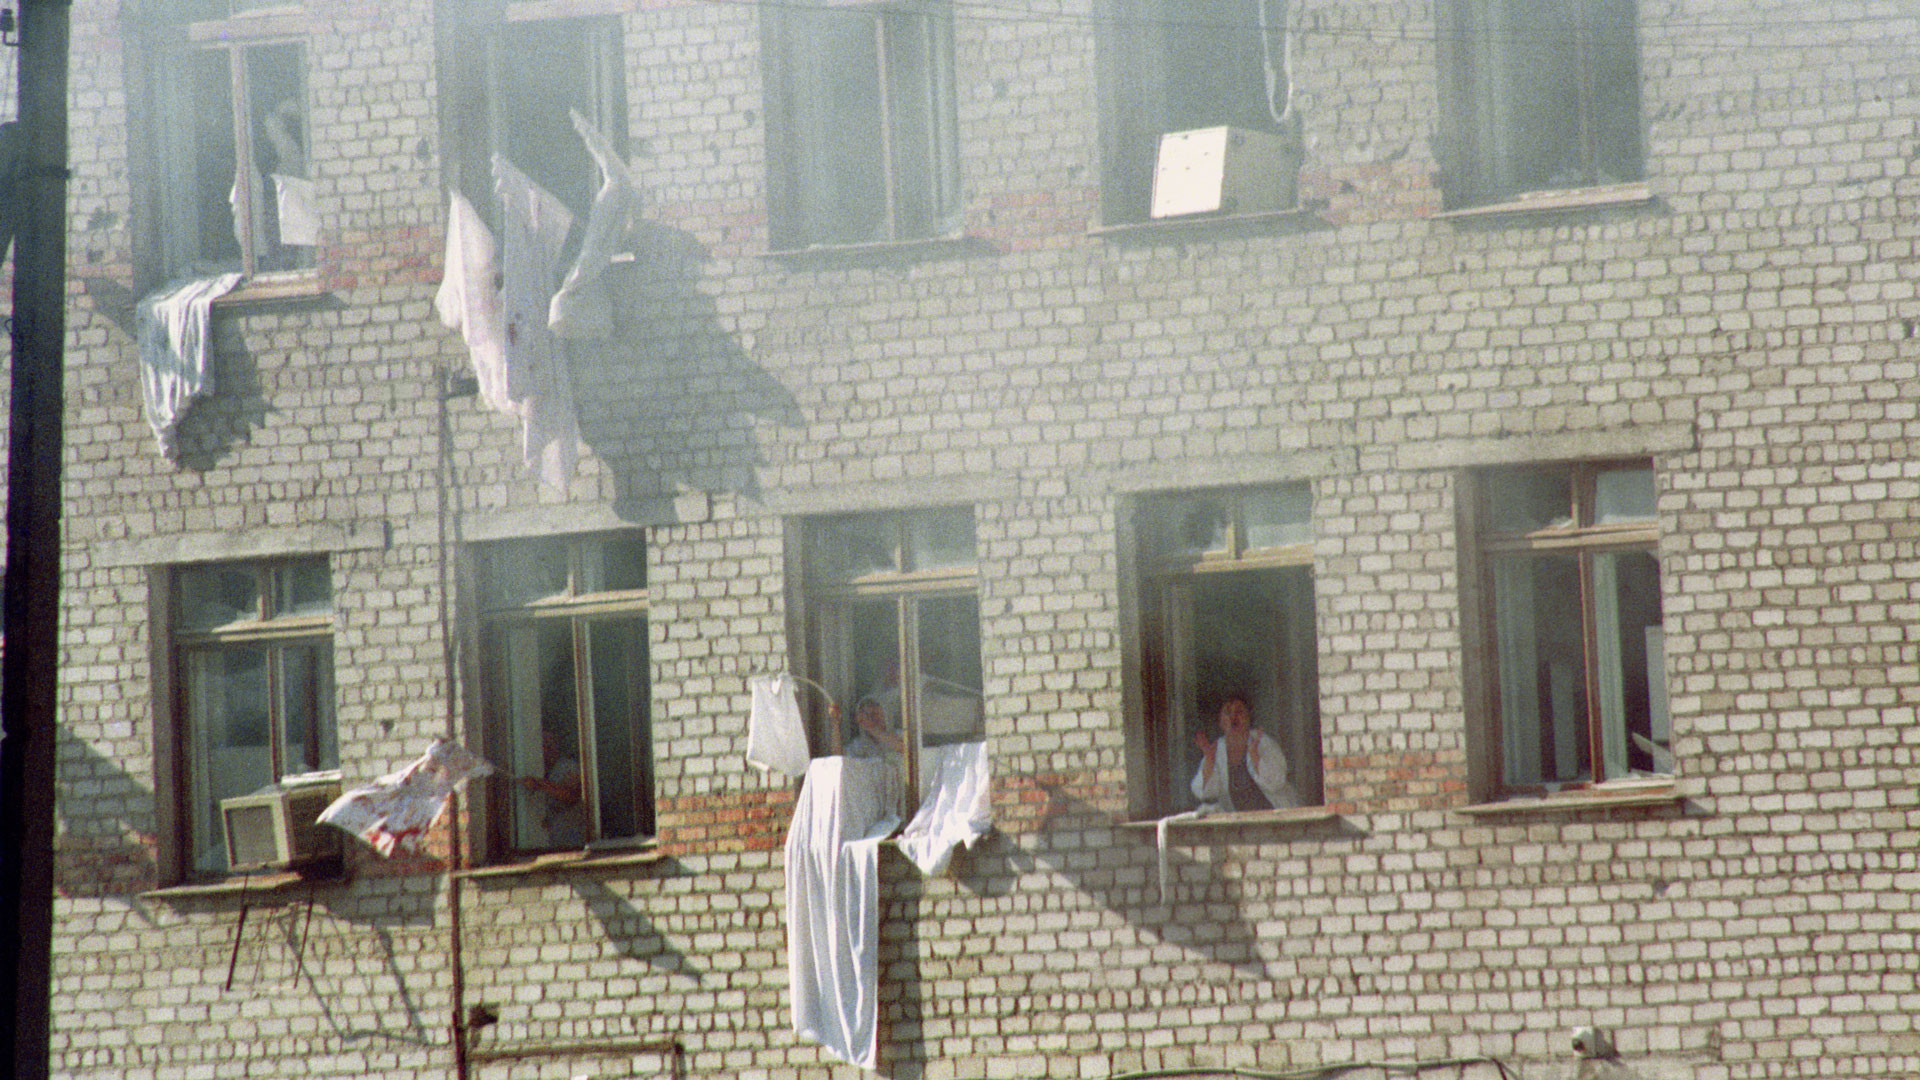 14 19 июня. Захват заложников в Буденновске 1995. Террористический акт в будённовске (14—19 июня 1995). Буденновск 14 июня 1995 года. Штурм больницы в Буденновске 1995.